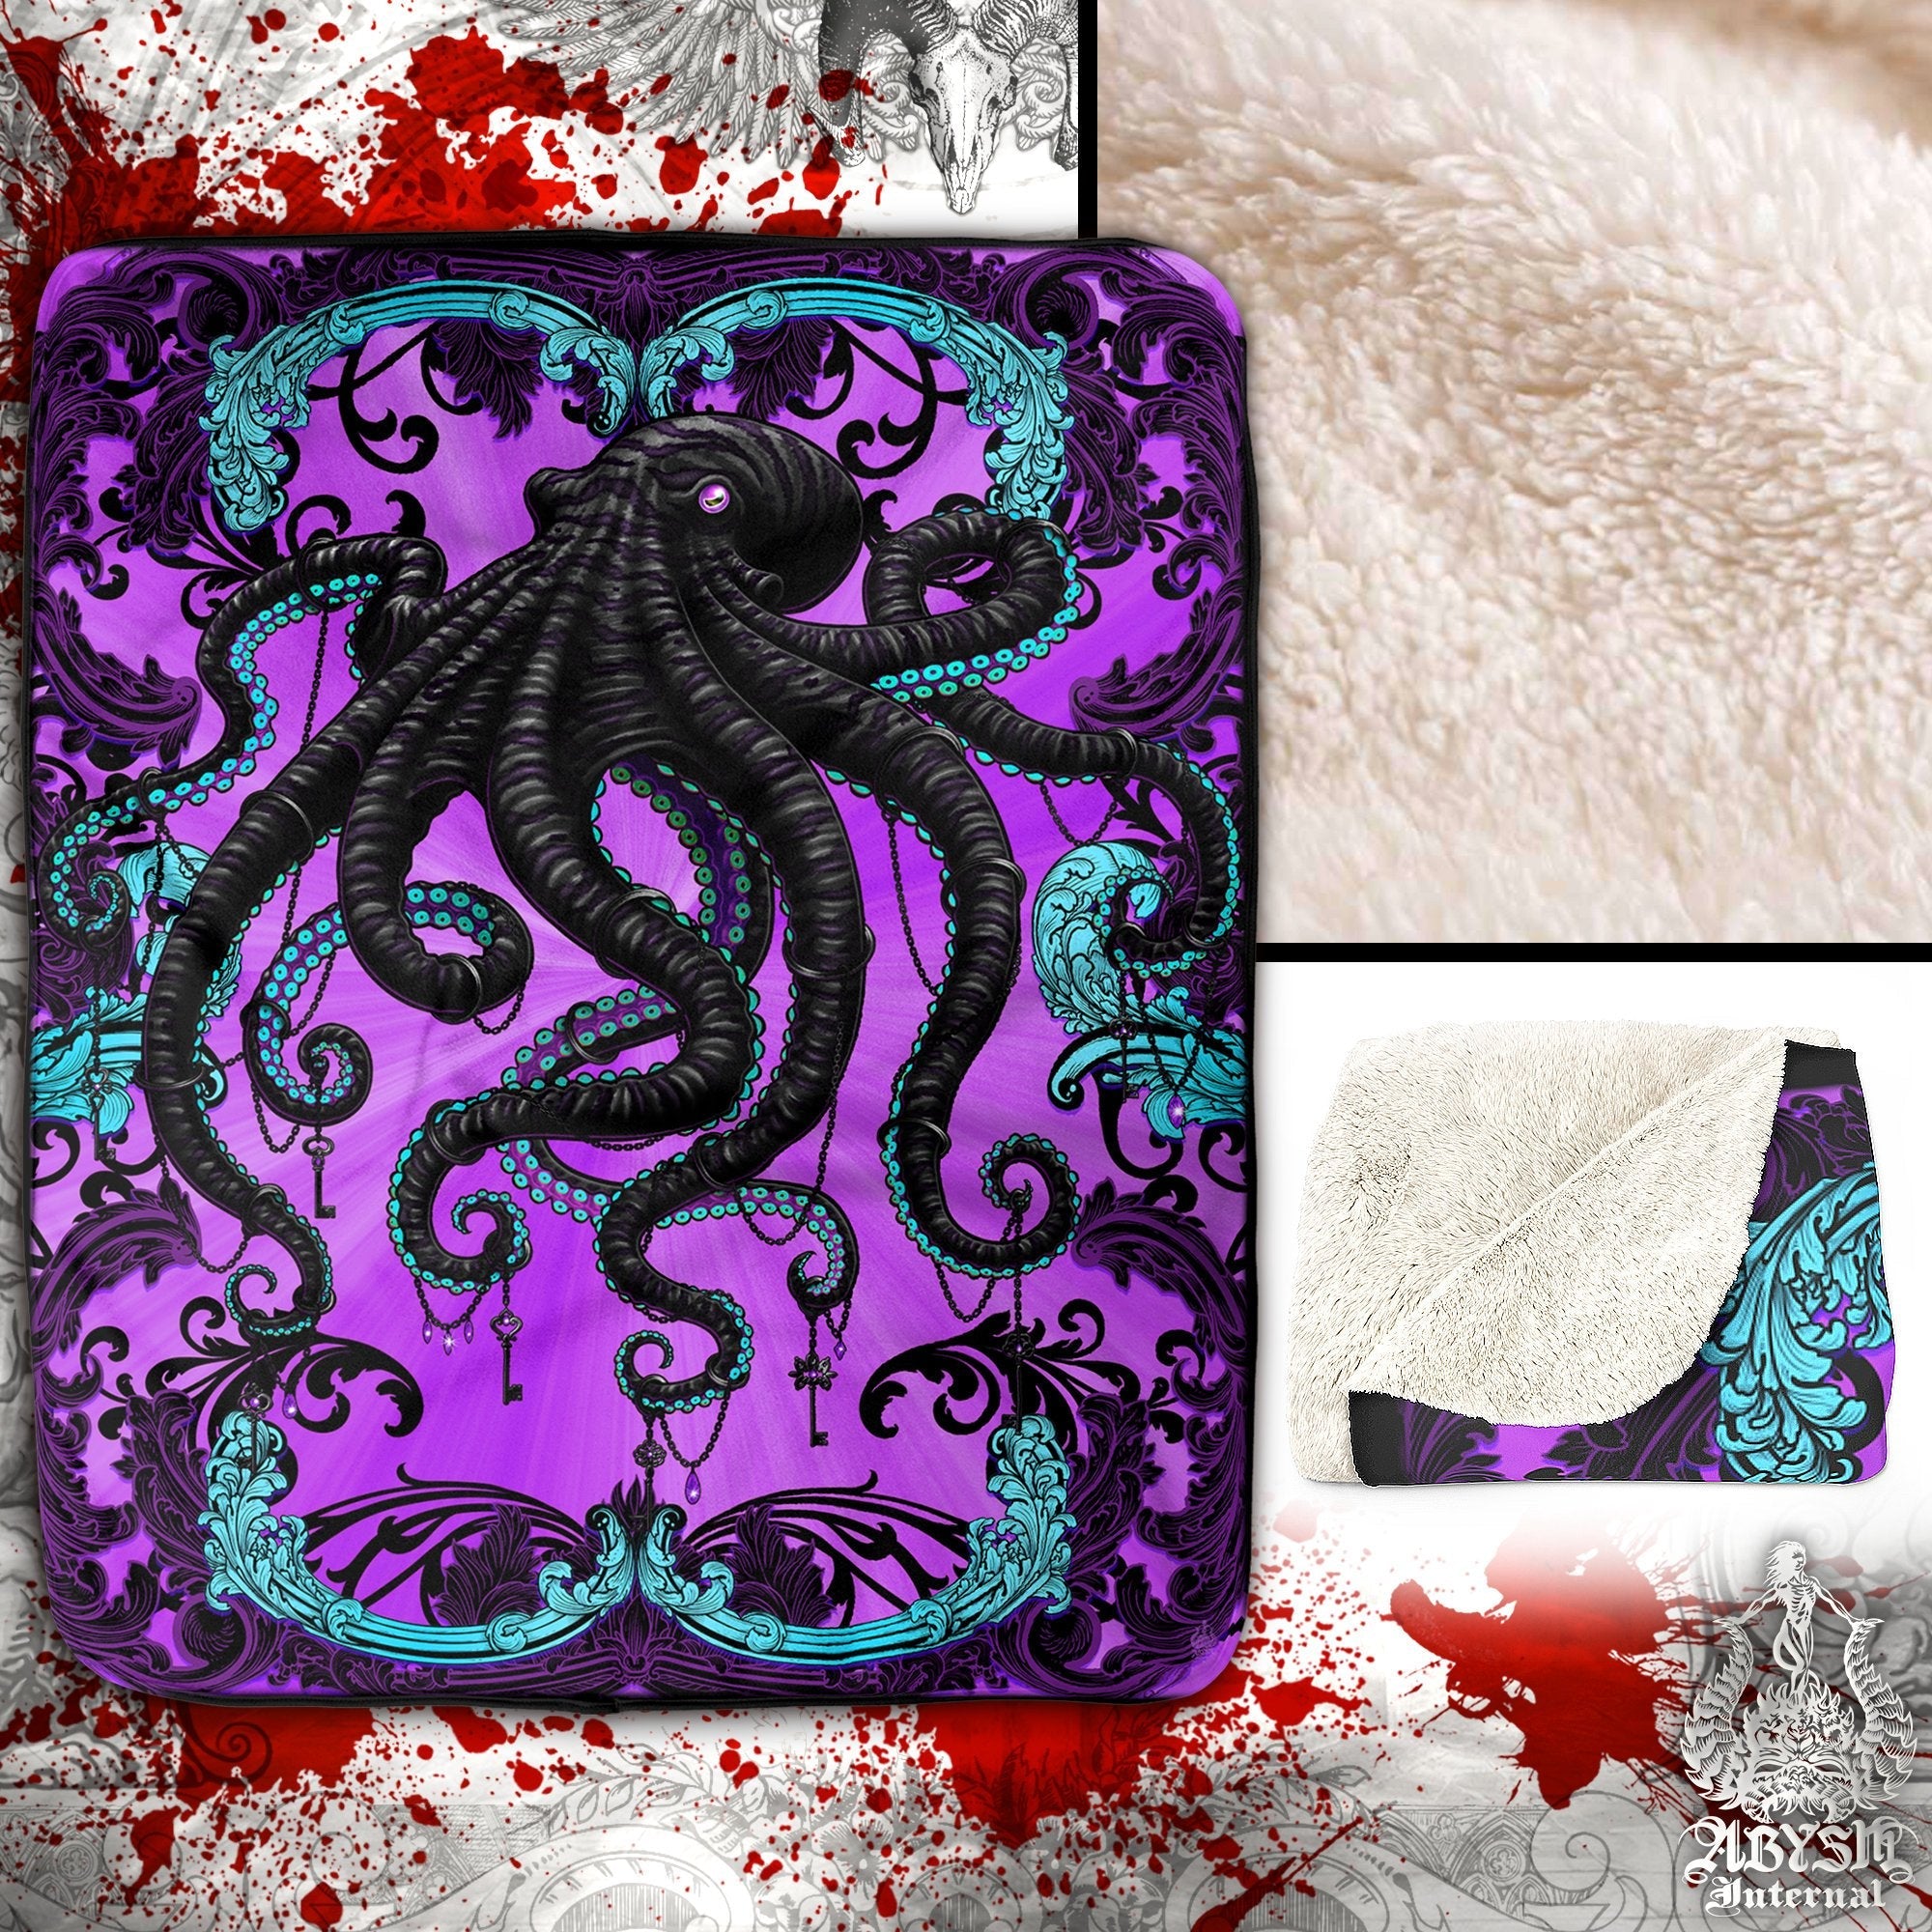 Pastel Goth Throw Fleece Blanket, Gothic Home Decor, Alternative Art Gift - Purple, Black Octopus - Abysm Internal